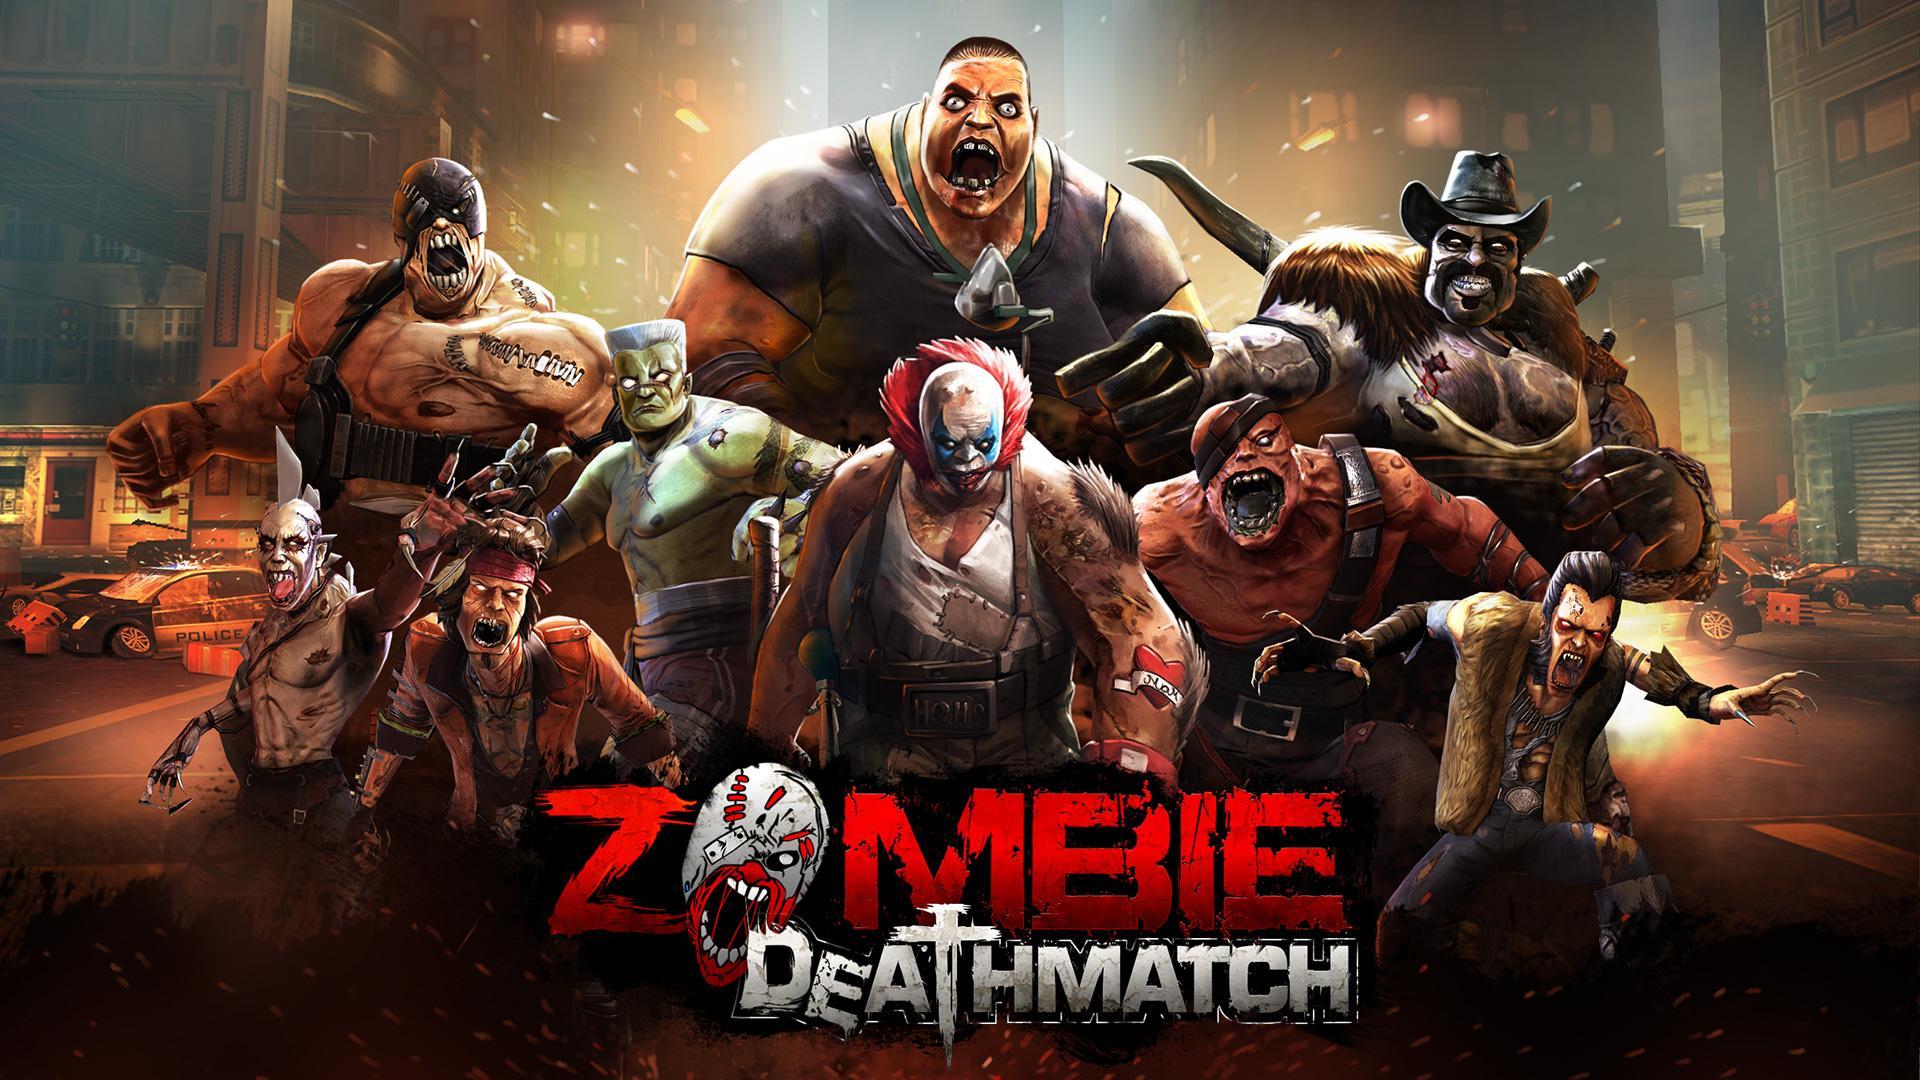 Screenshot 1 of Zombie Fighting Champions 0.0.21